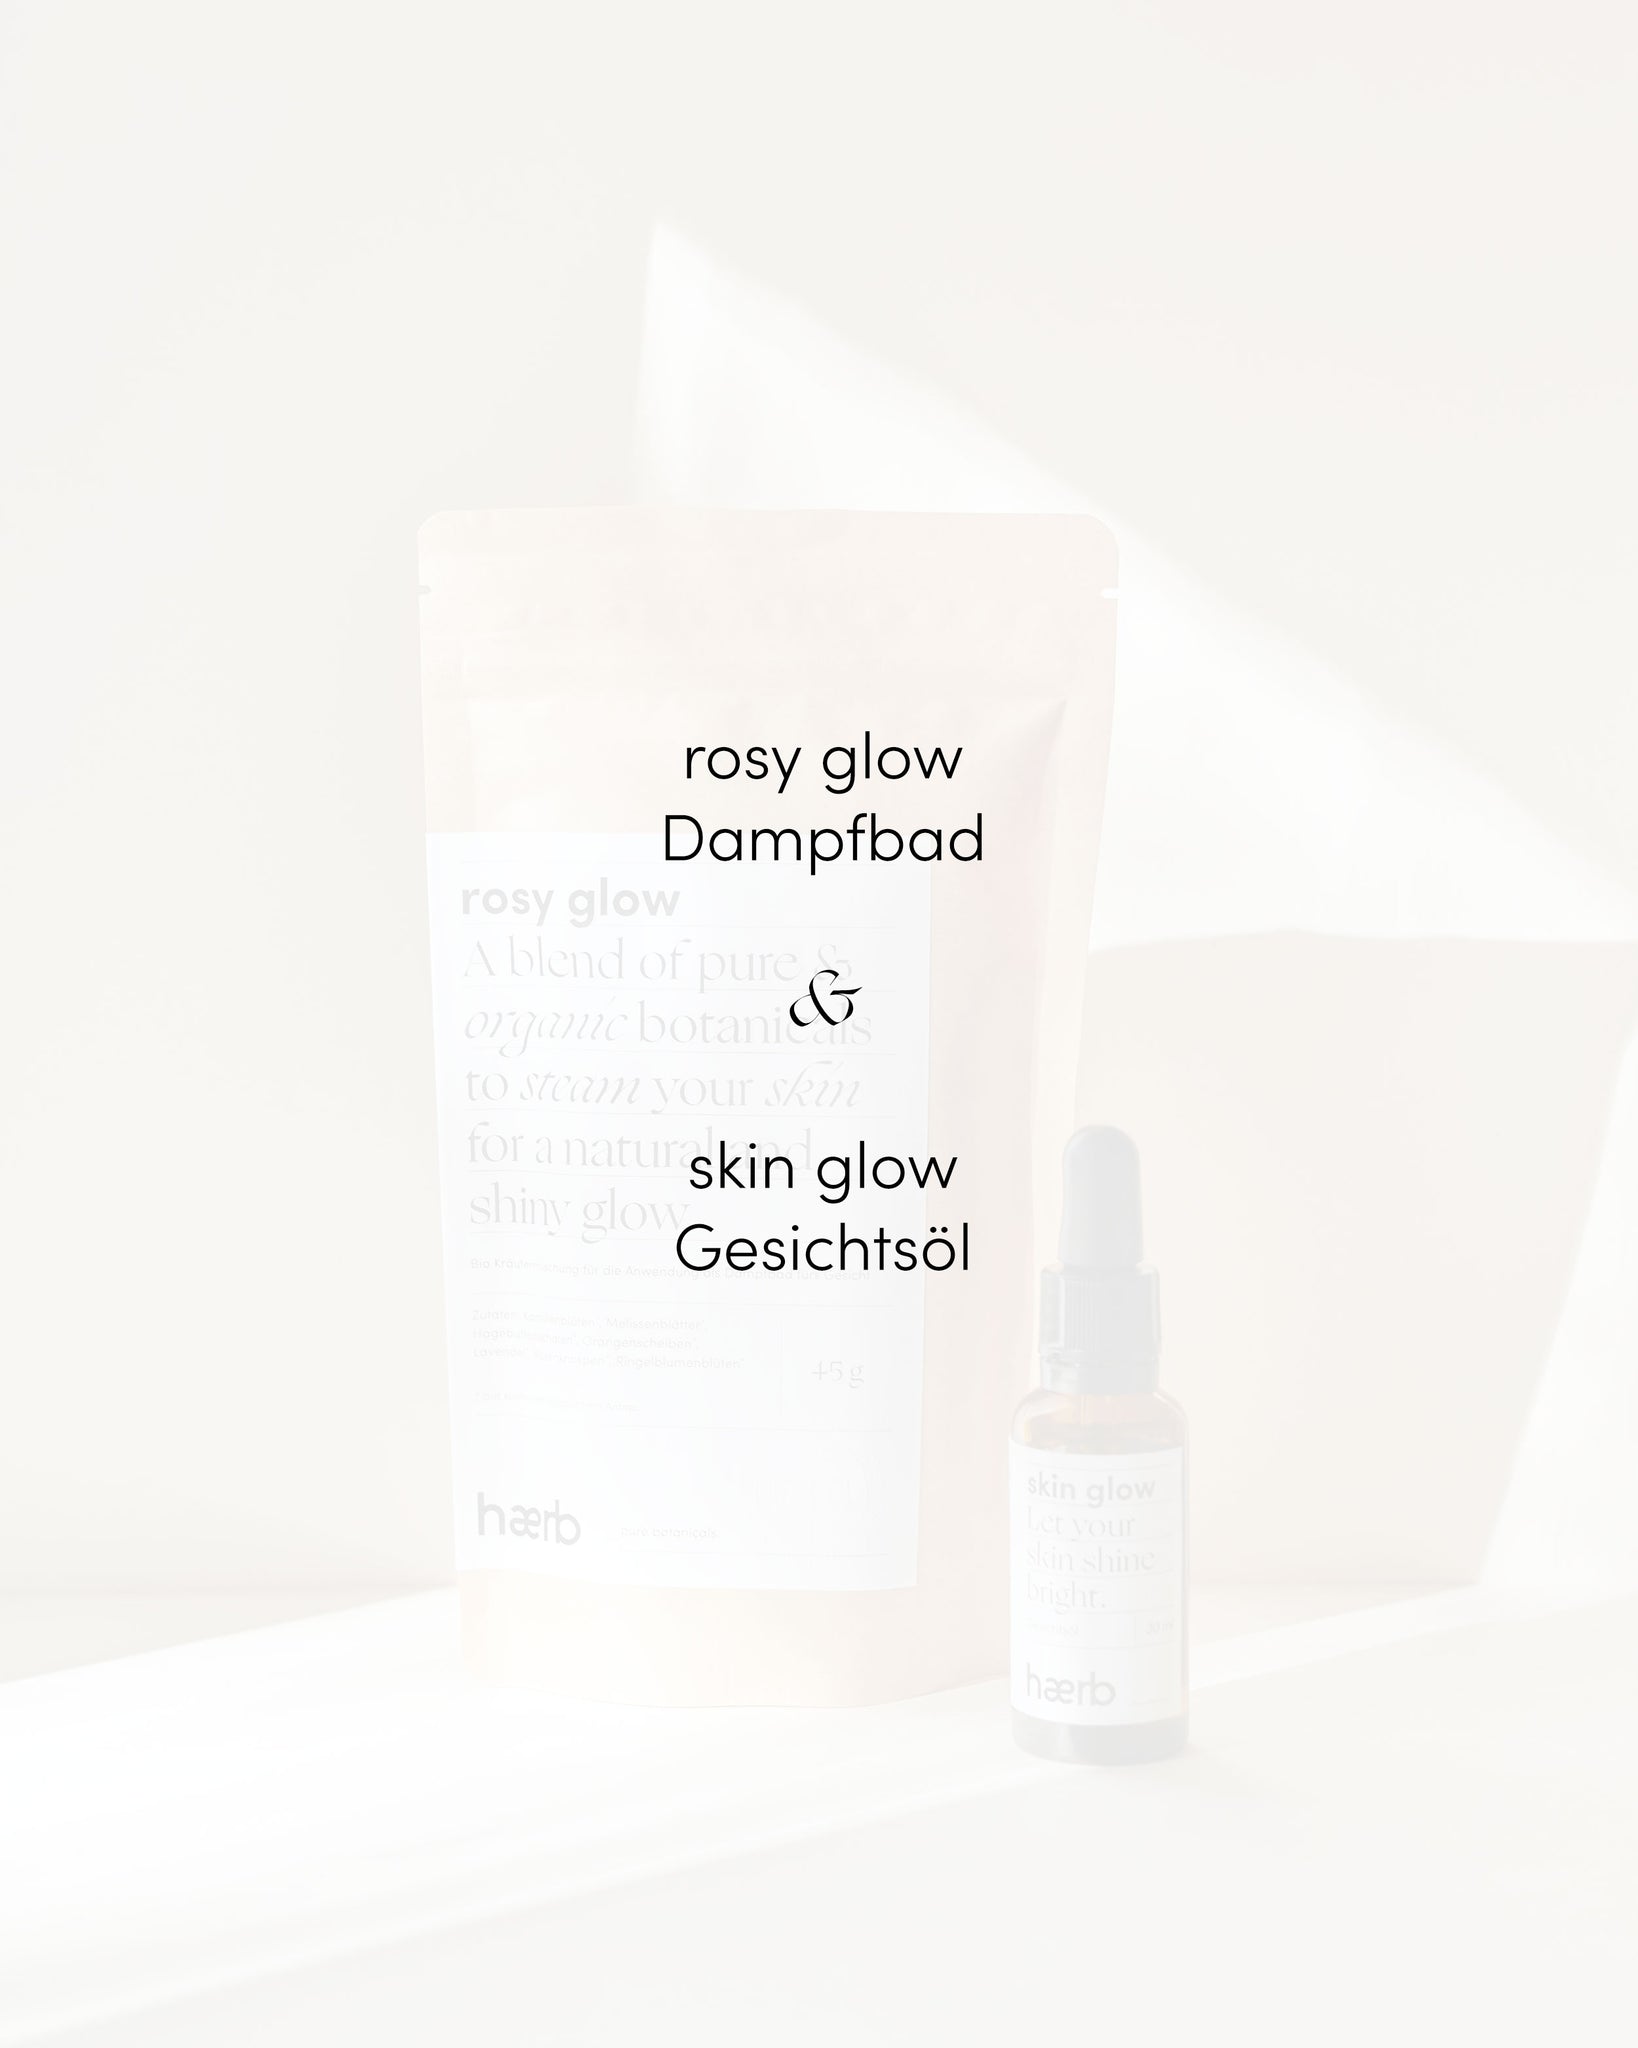 skin glow package // Gesichtsöl & Dampfbad